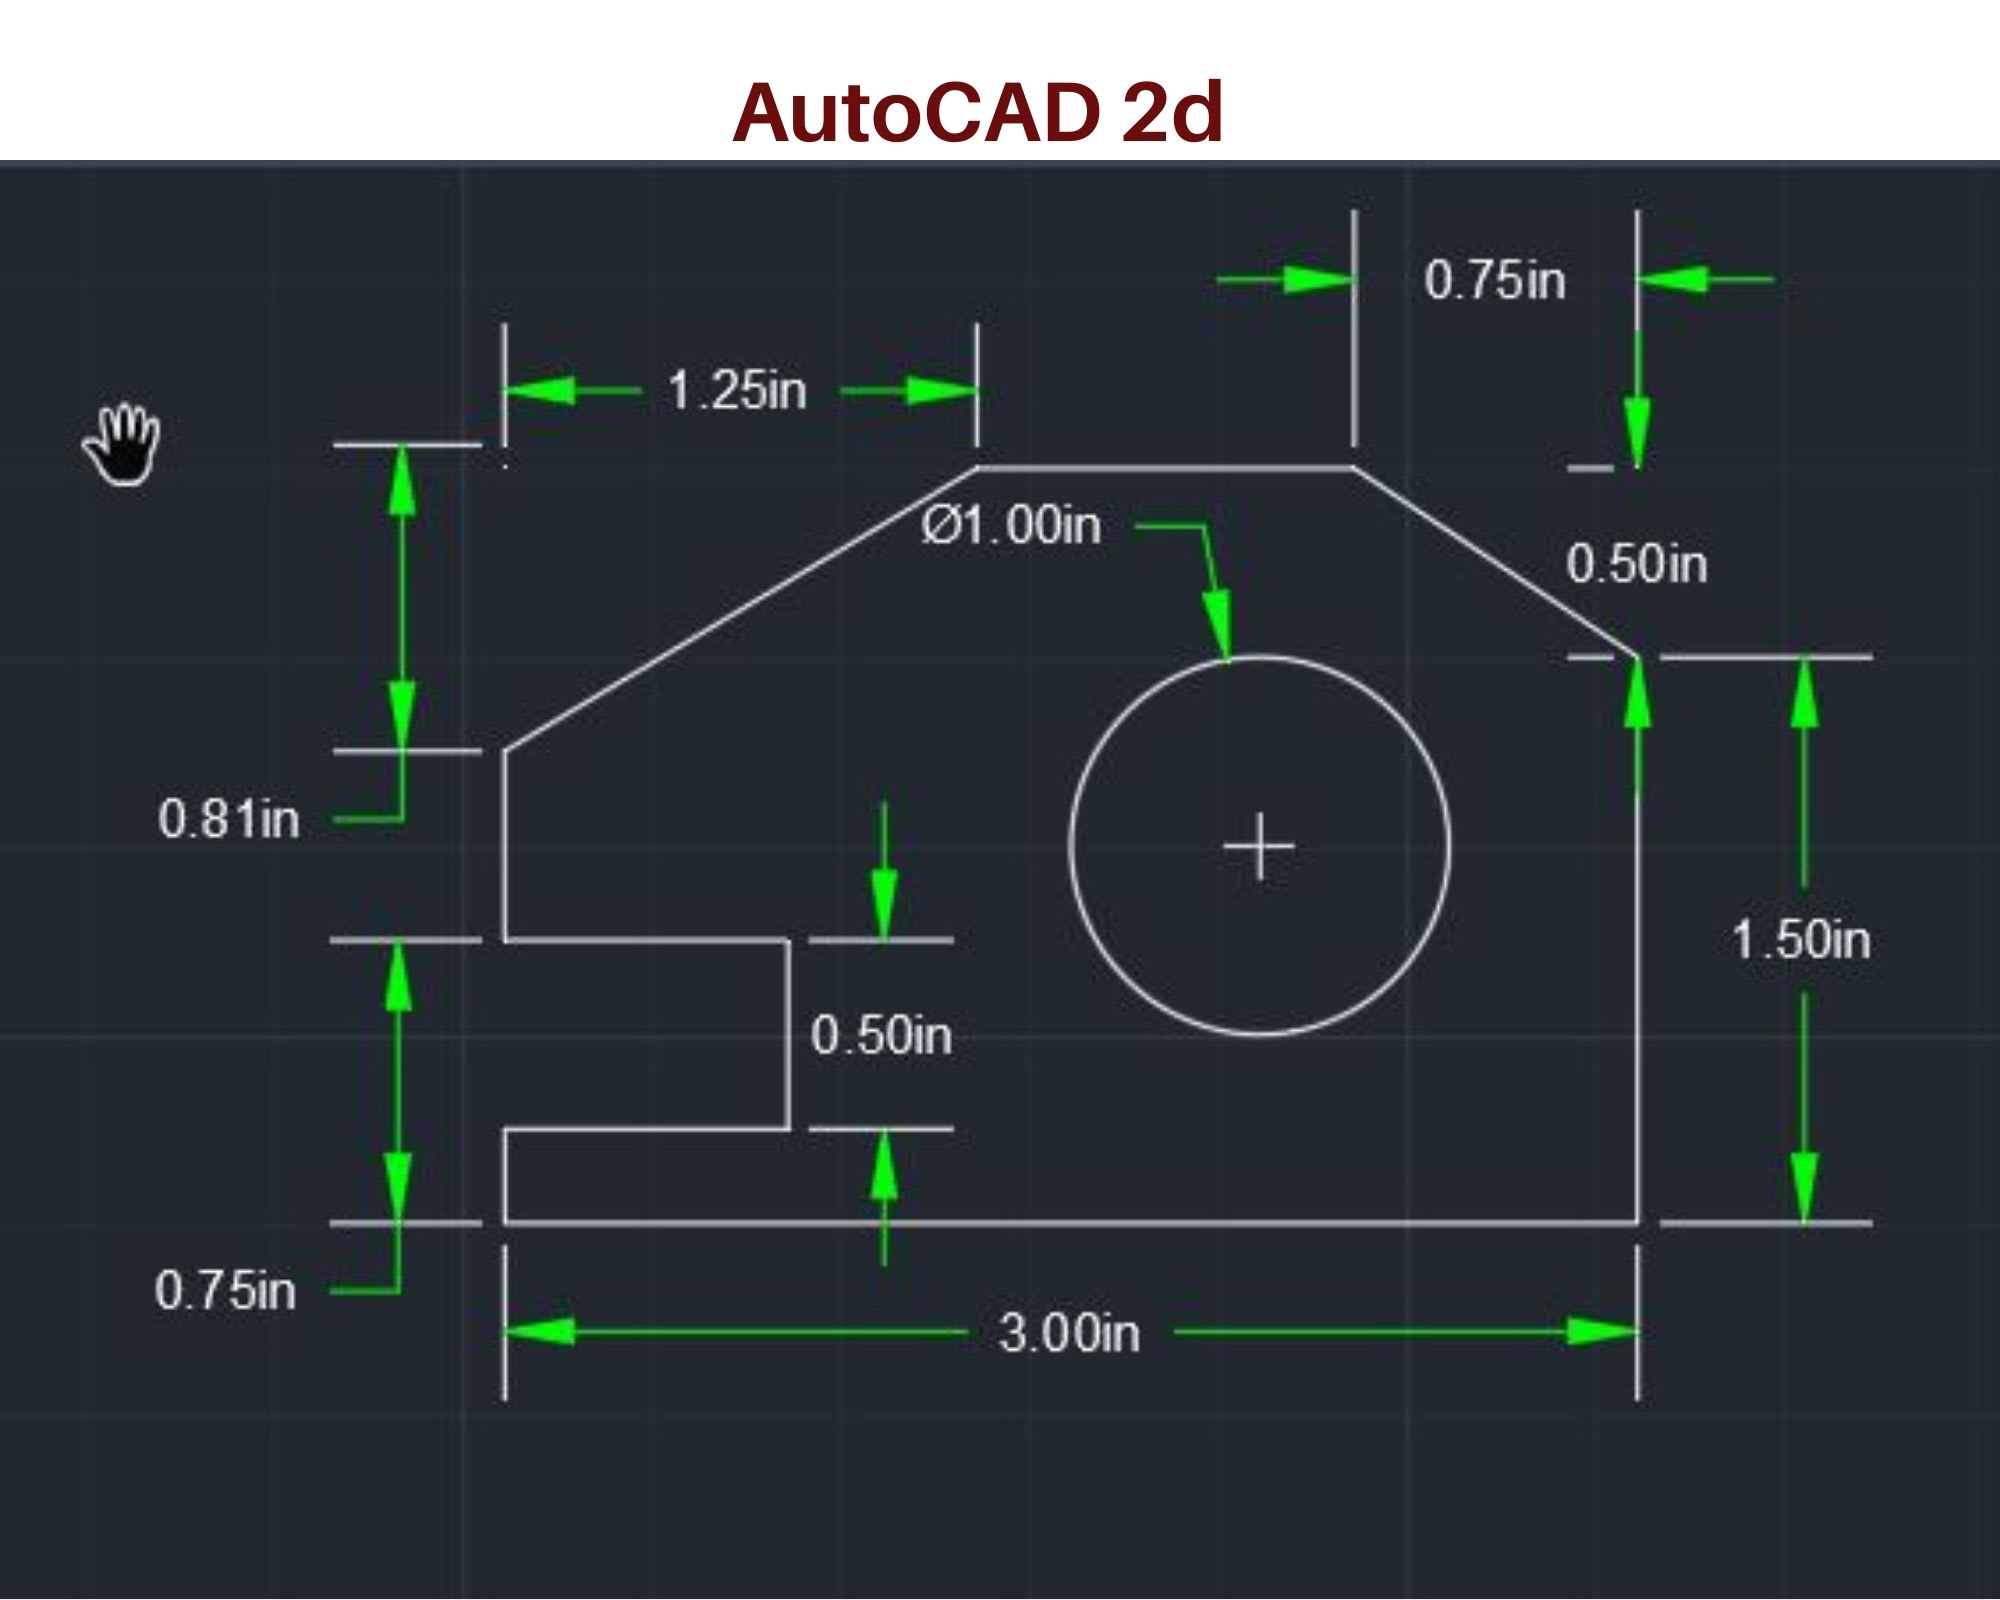 Hãy khám phá những hình ảnh về vẽ kỹ thuật cơ khí 2D và 3D trong Autocad và Inventor để hiểu rõ hơn về quá trình thiết kế sản phẩm. Với kinh nghiệm và kỹ năng vẽ ấn tượng, các chuyên gia sử dụng những phần mềm này để tạo nên những sản phẩm chất lượng và chính xác.